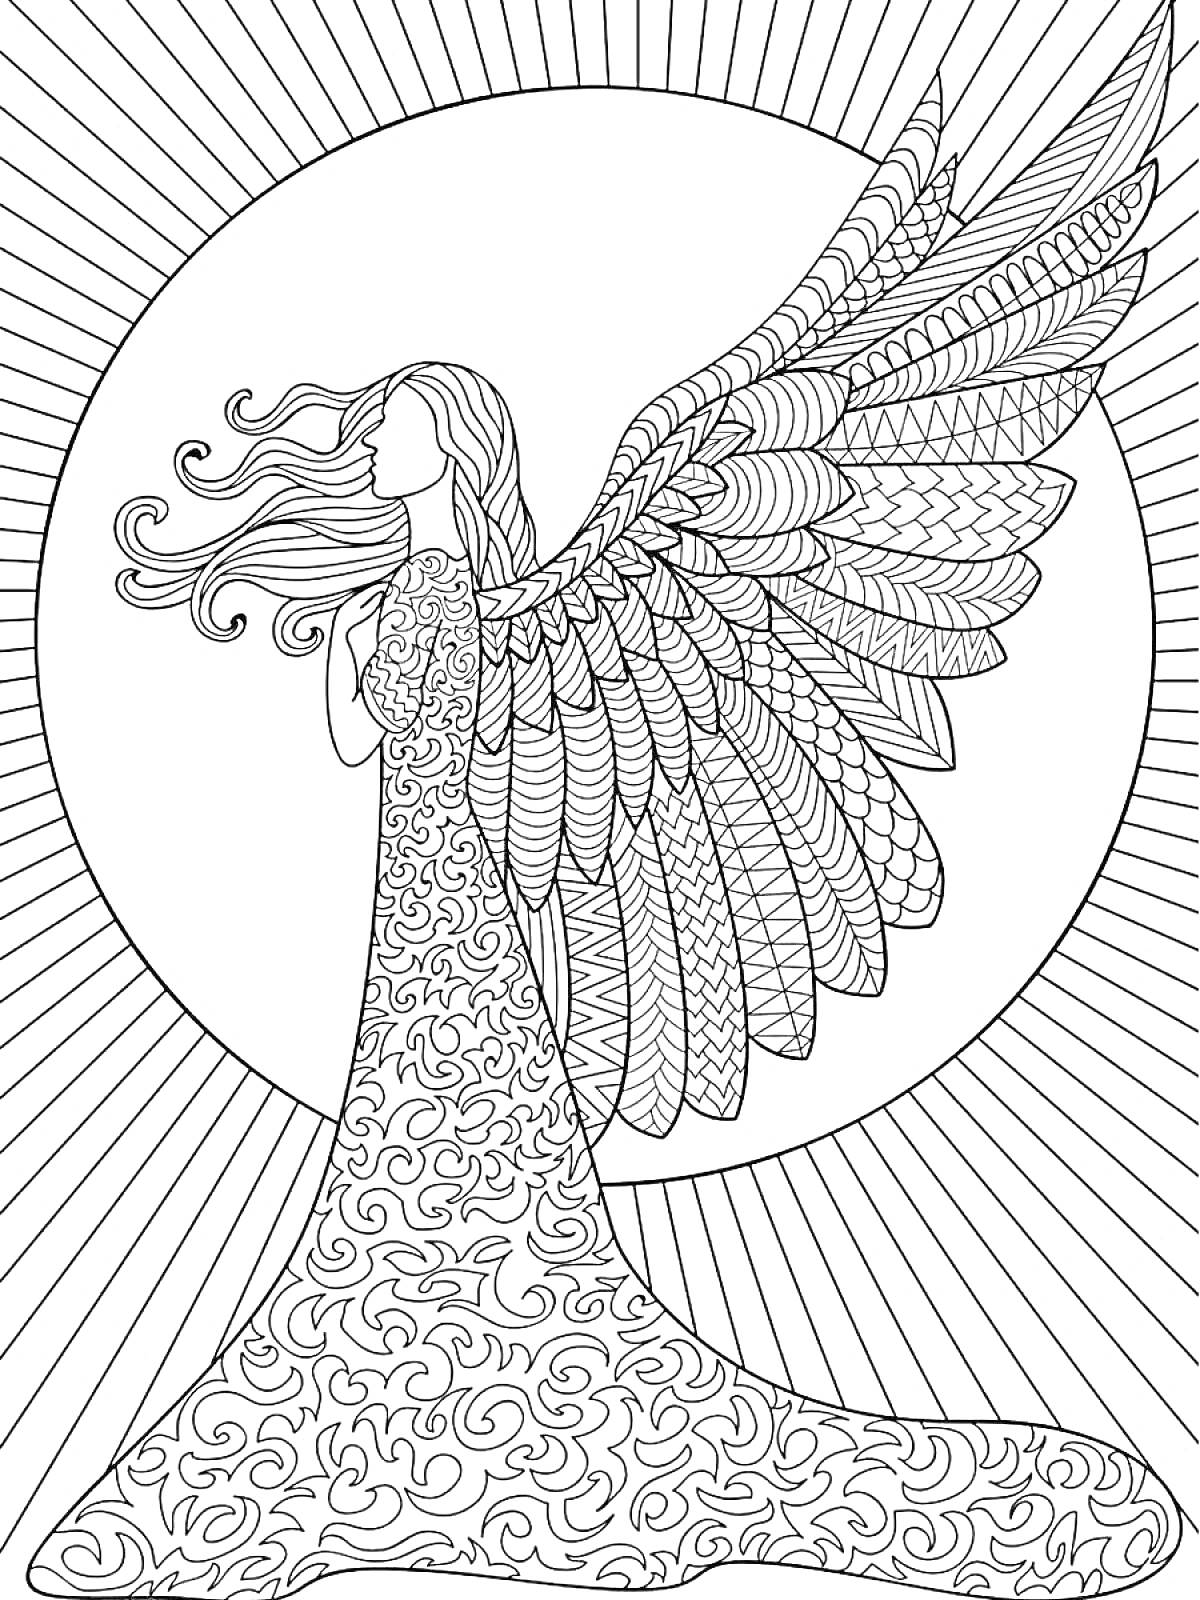 Раскраска Ангел с распущенными волосами в узорчатом платье, с большими крыльями на фоне солнца с лучами